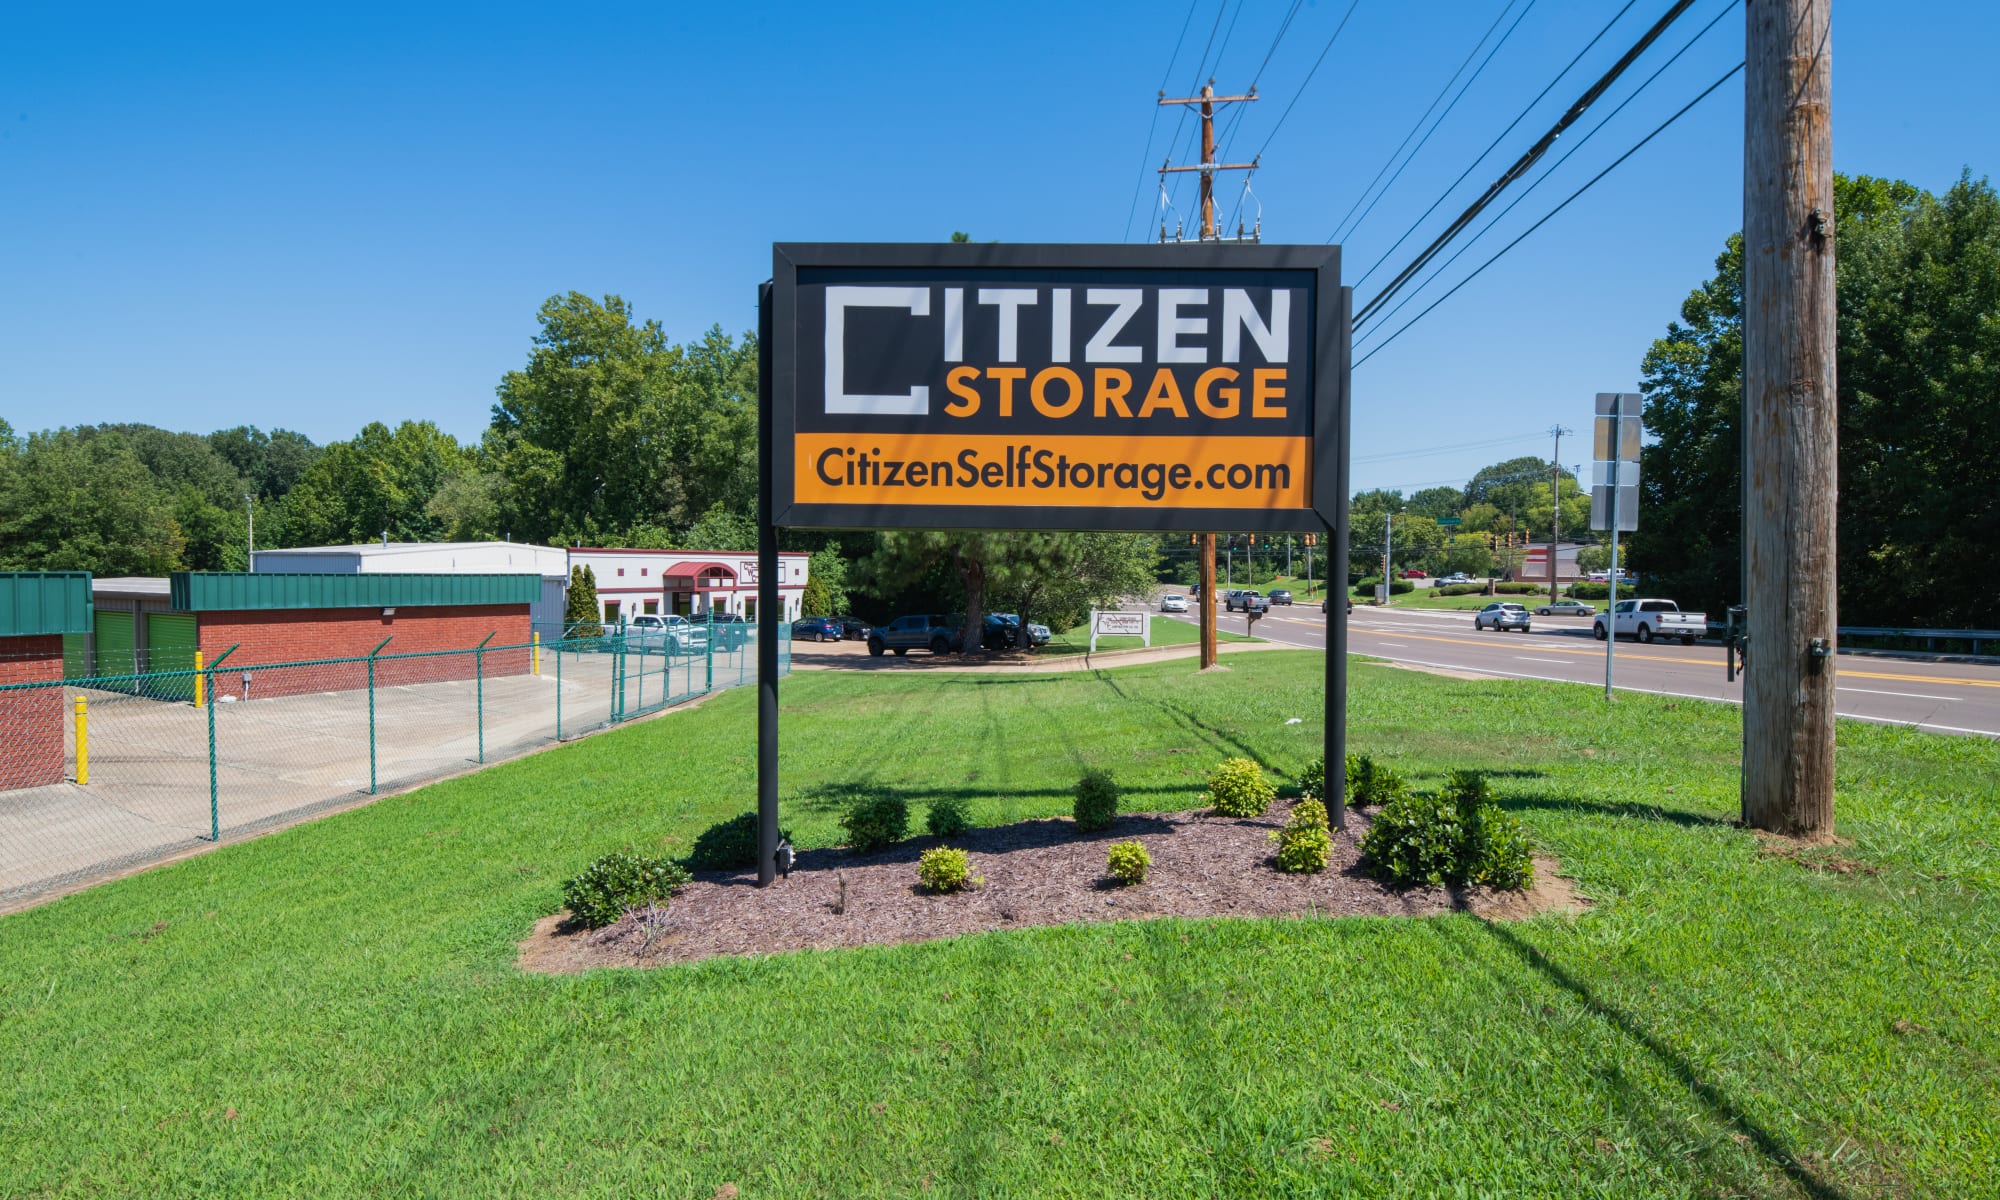 Self storage at Citizen Storage in Bartlett, Tennessee